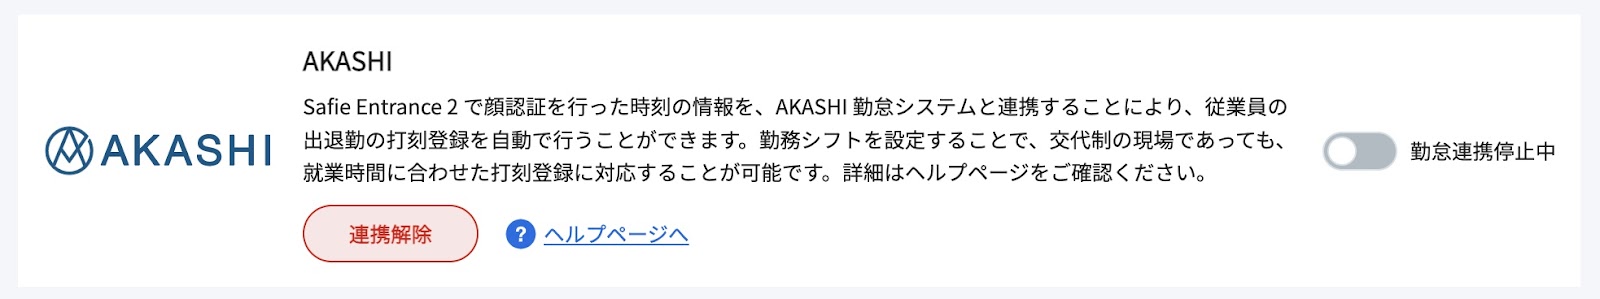 AKASHI3.jpg